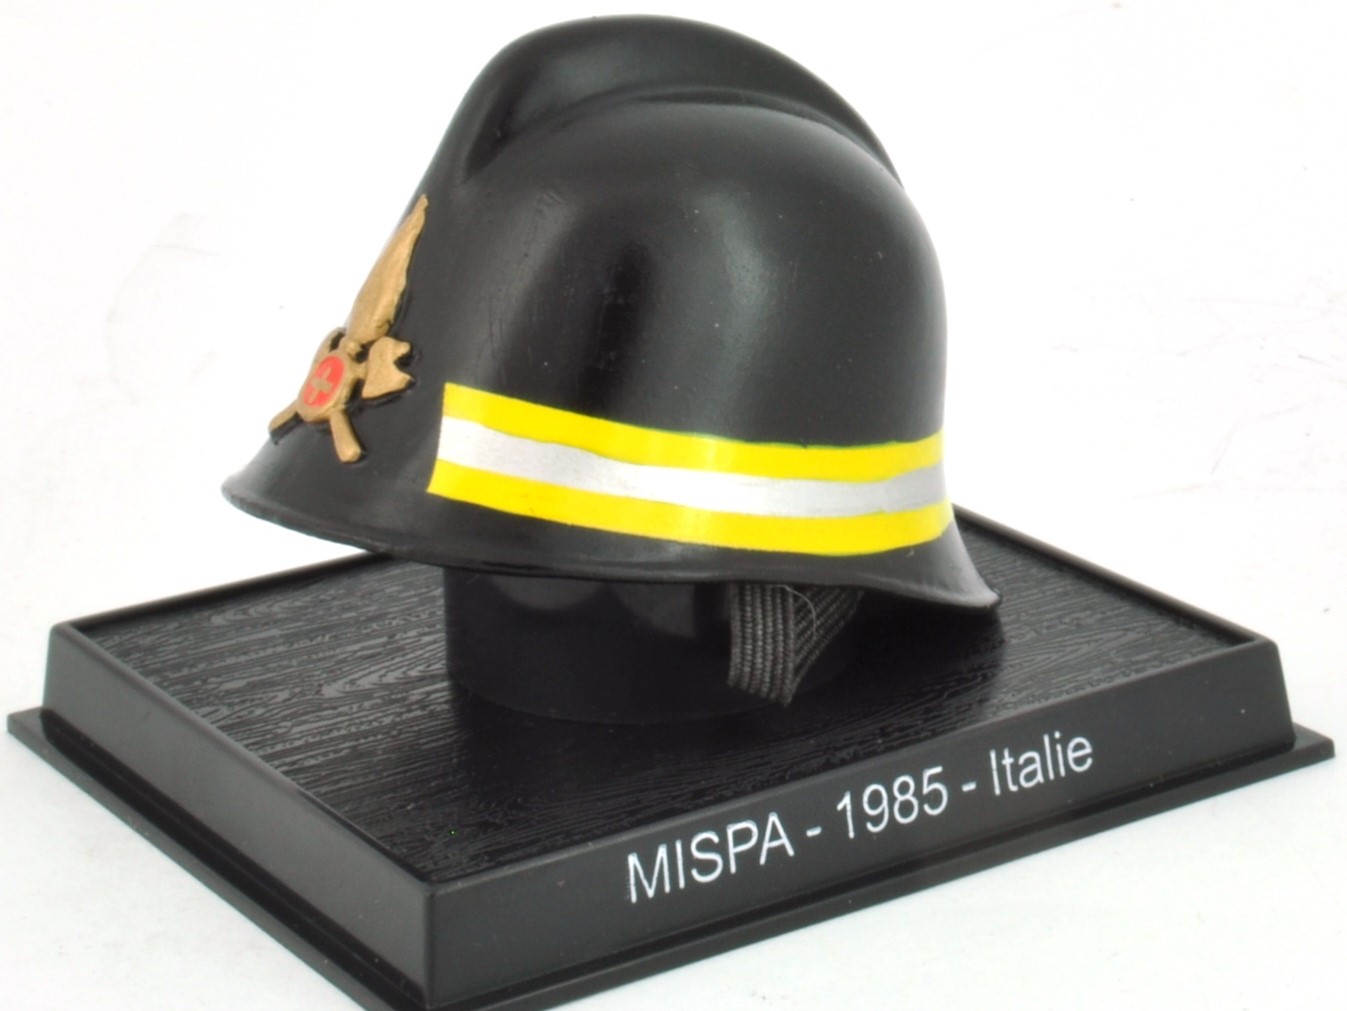 MISPA - 1985 - Italie